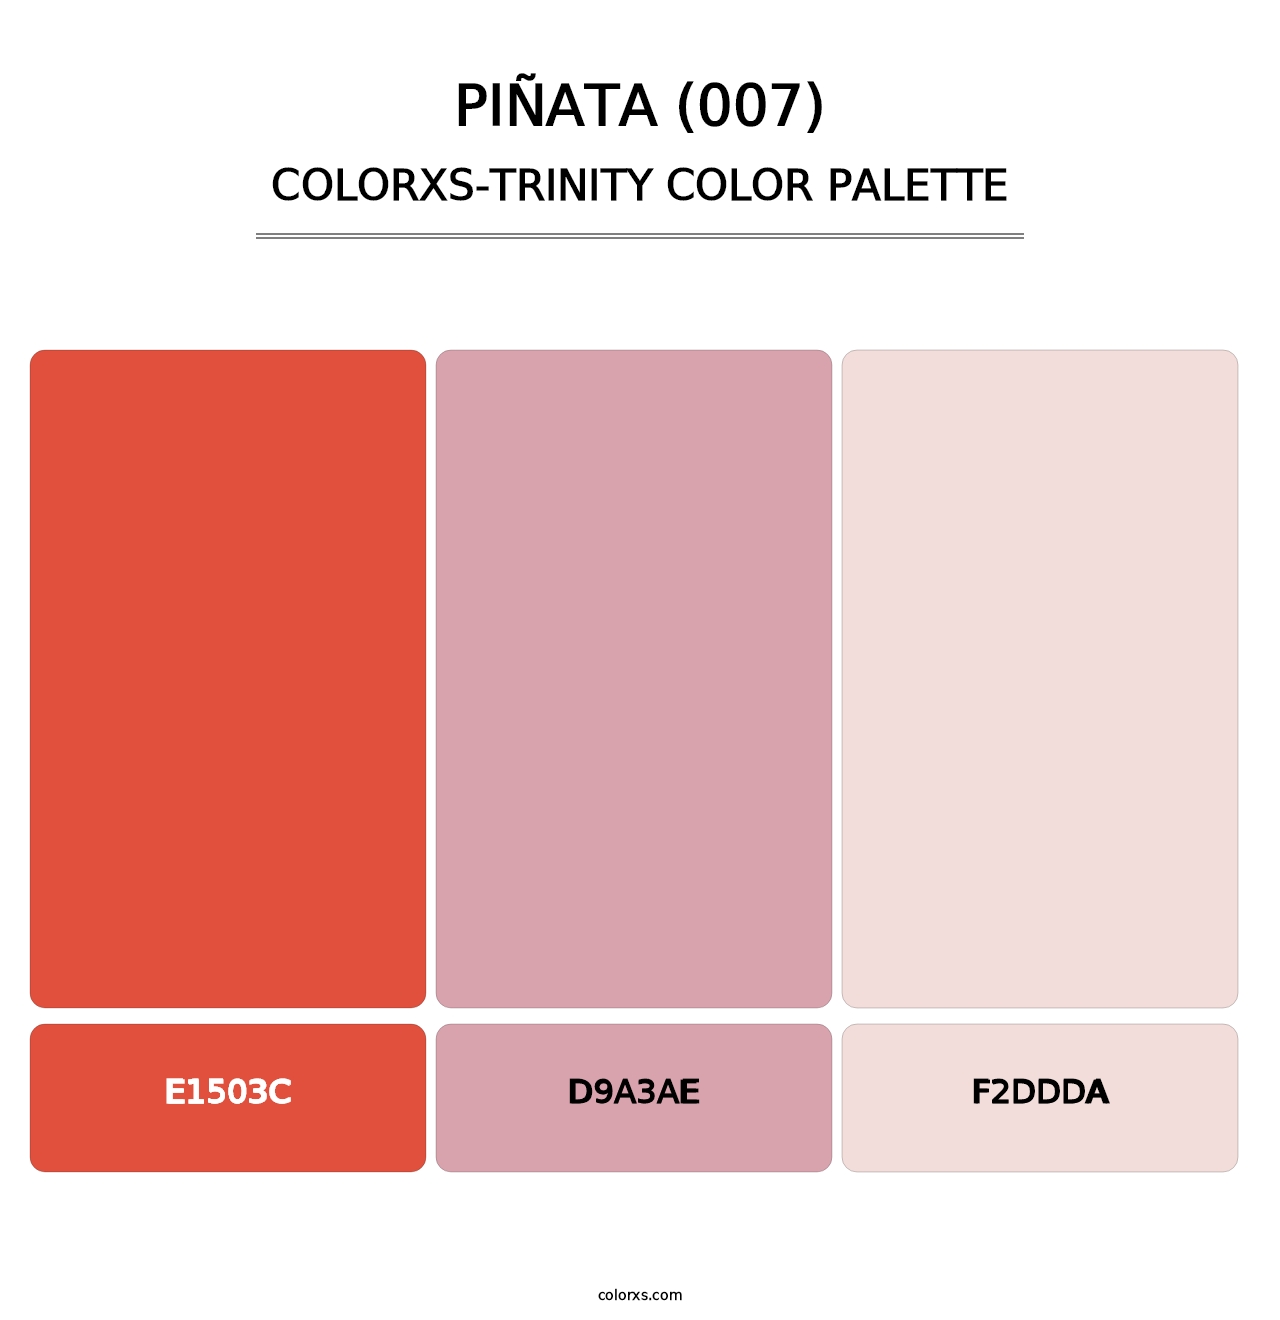 Piñata (007) - Colorxs Trinity Palette